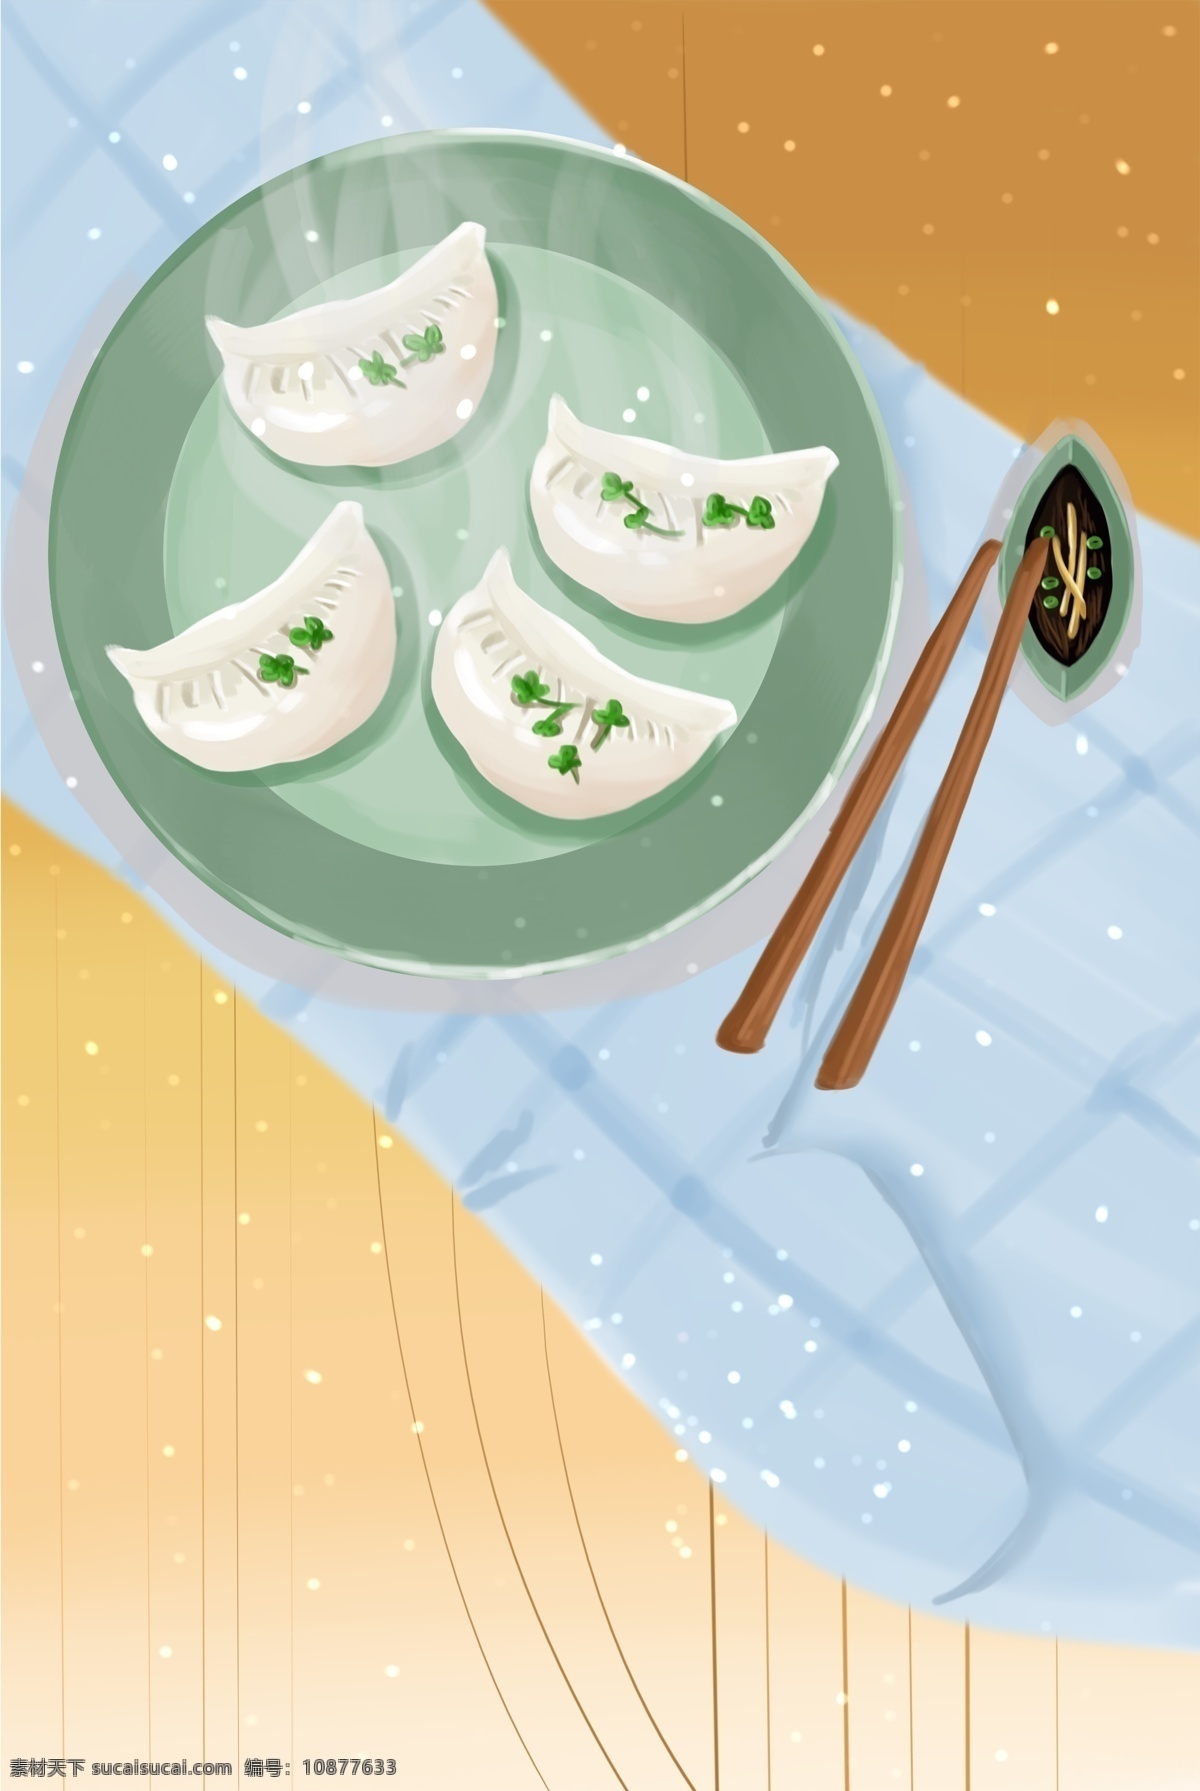 美食 中国 韭菜 饺子 插画 海报 食材 筷子 特色 插画风 促销海报